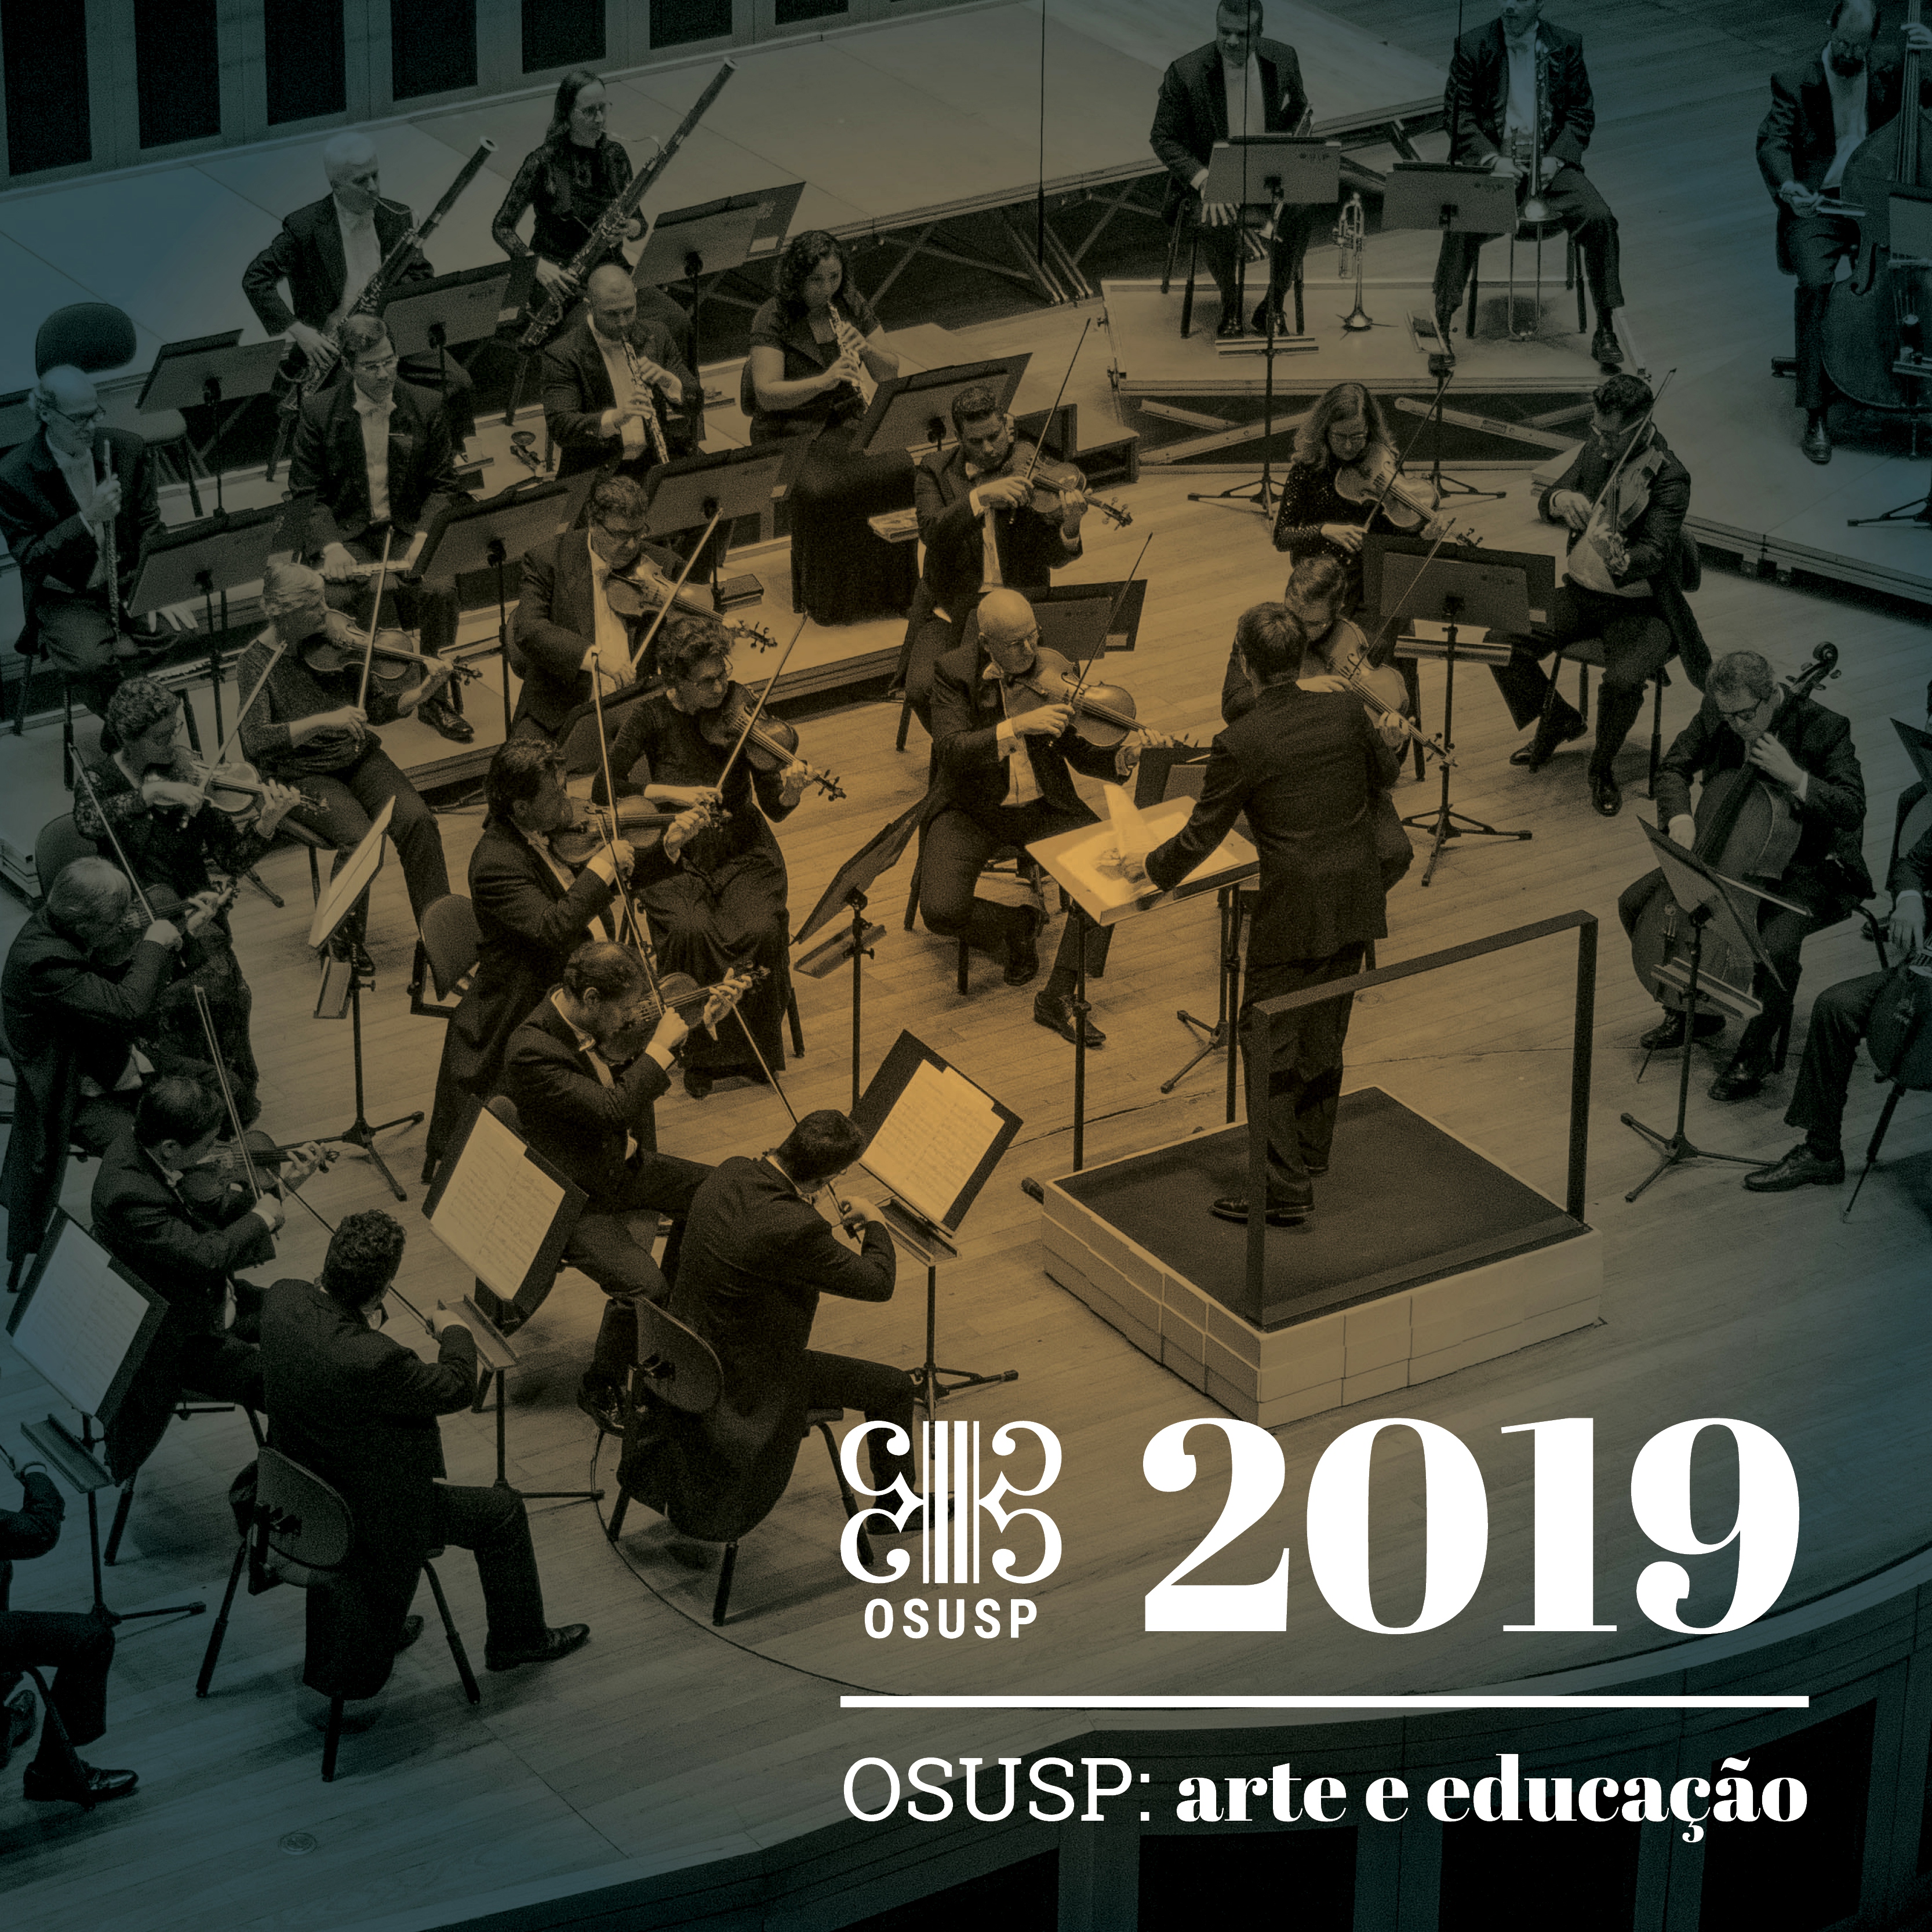 (Português) Nova temporada de concertos da OSUSP tem início no mês de fevereiro com diversas apresentações